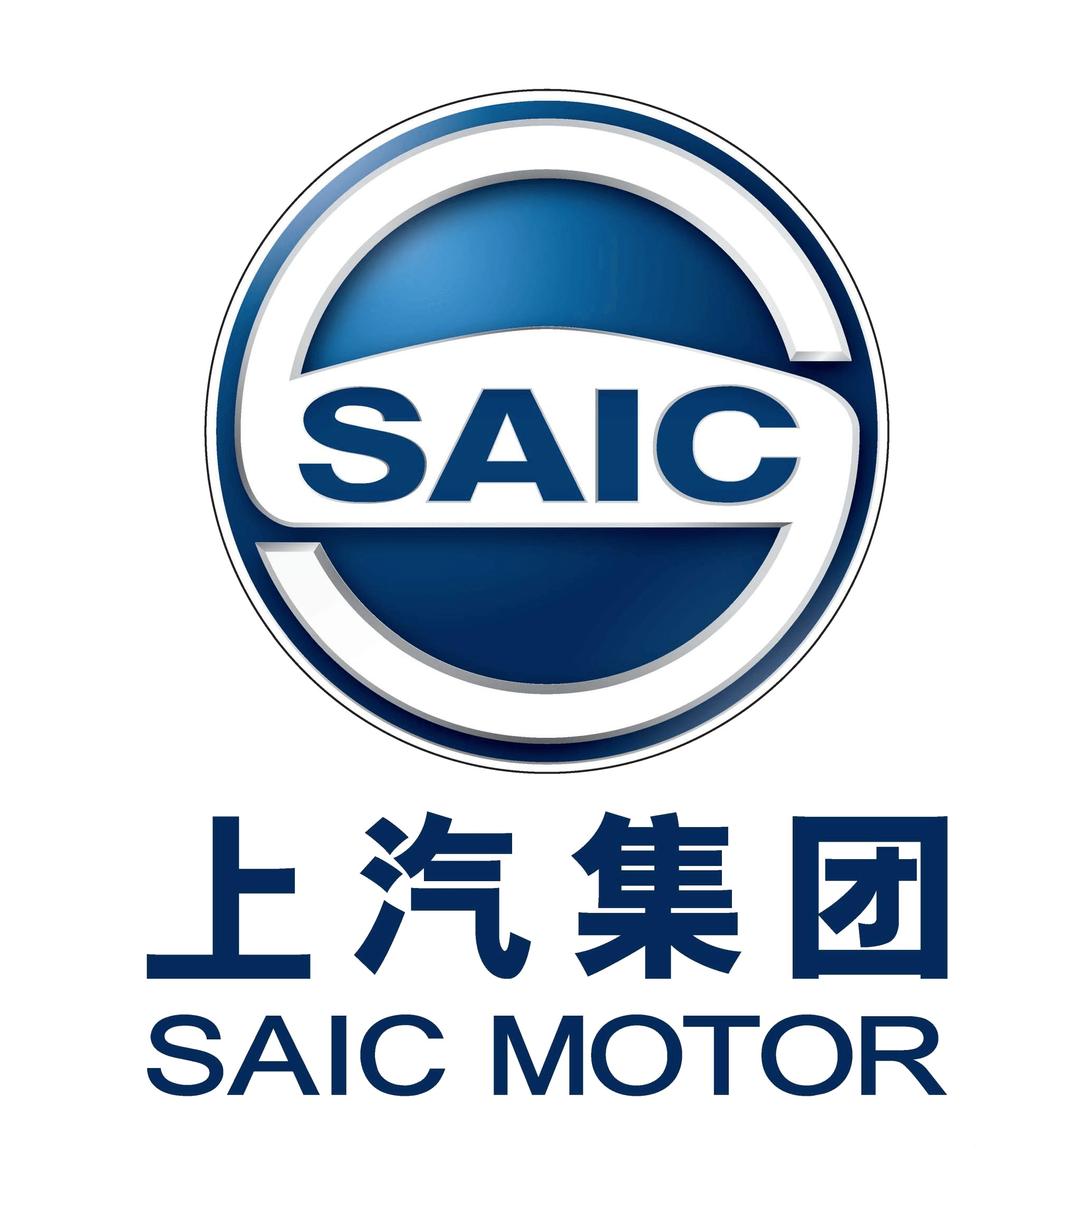 Car Logo Saic Motor png transparent